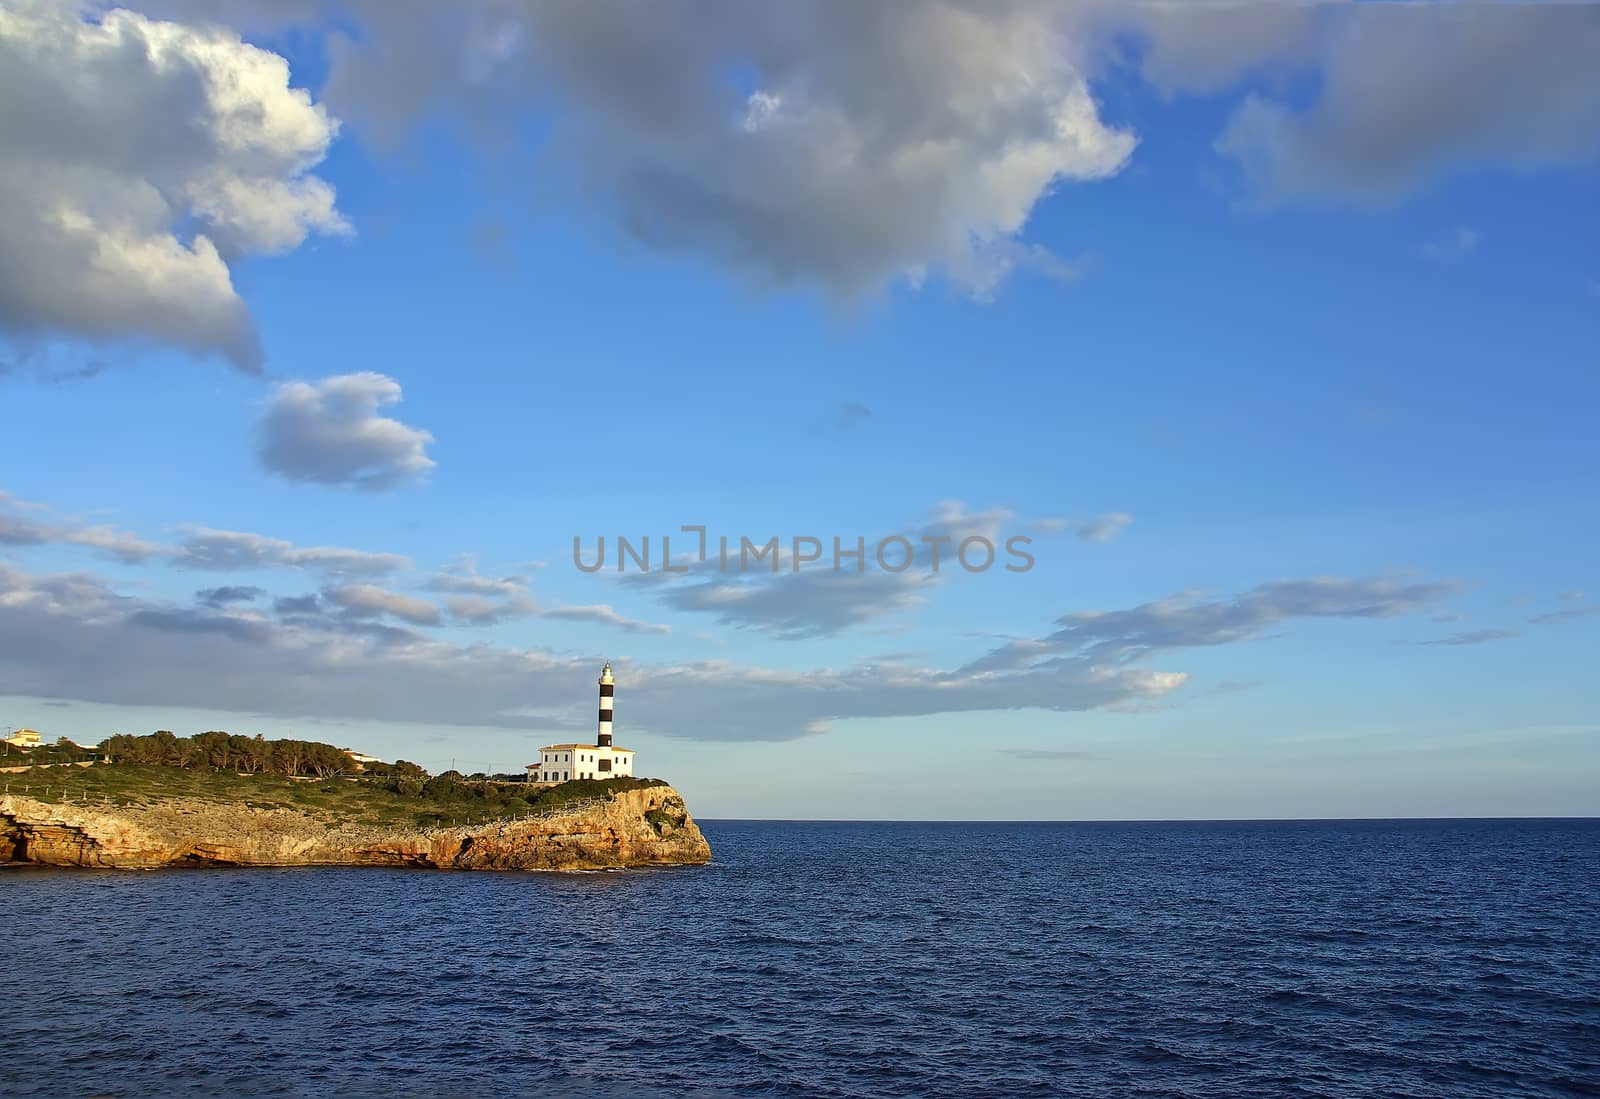 Porto Colom Lighthouse in Majorca by JCVSTOCK